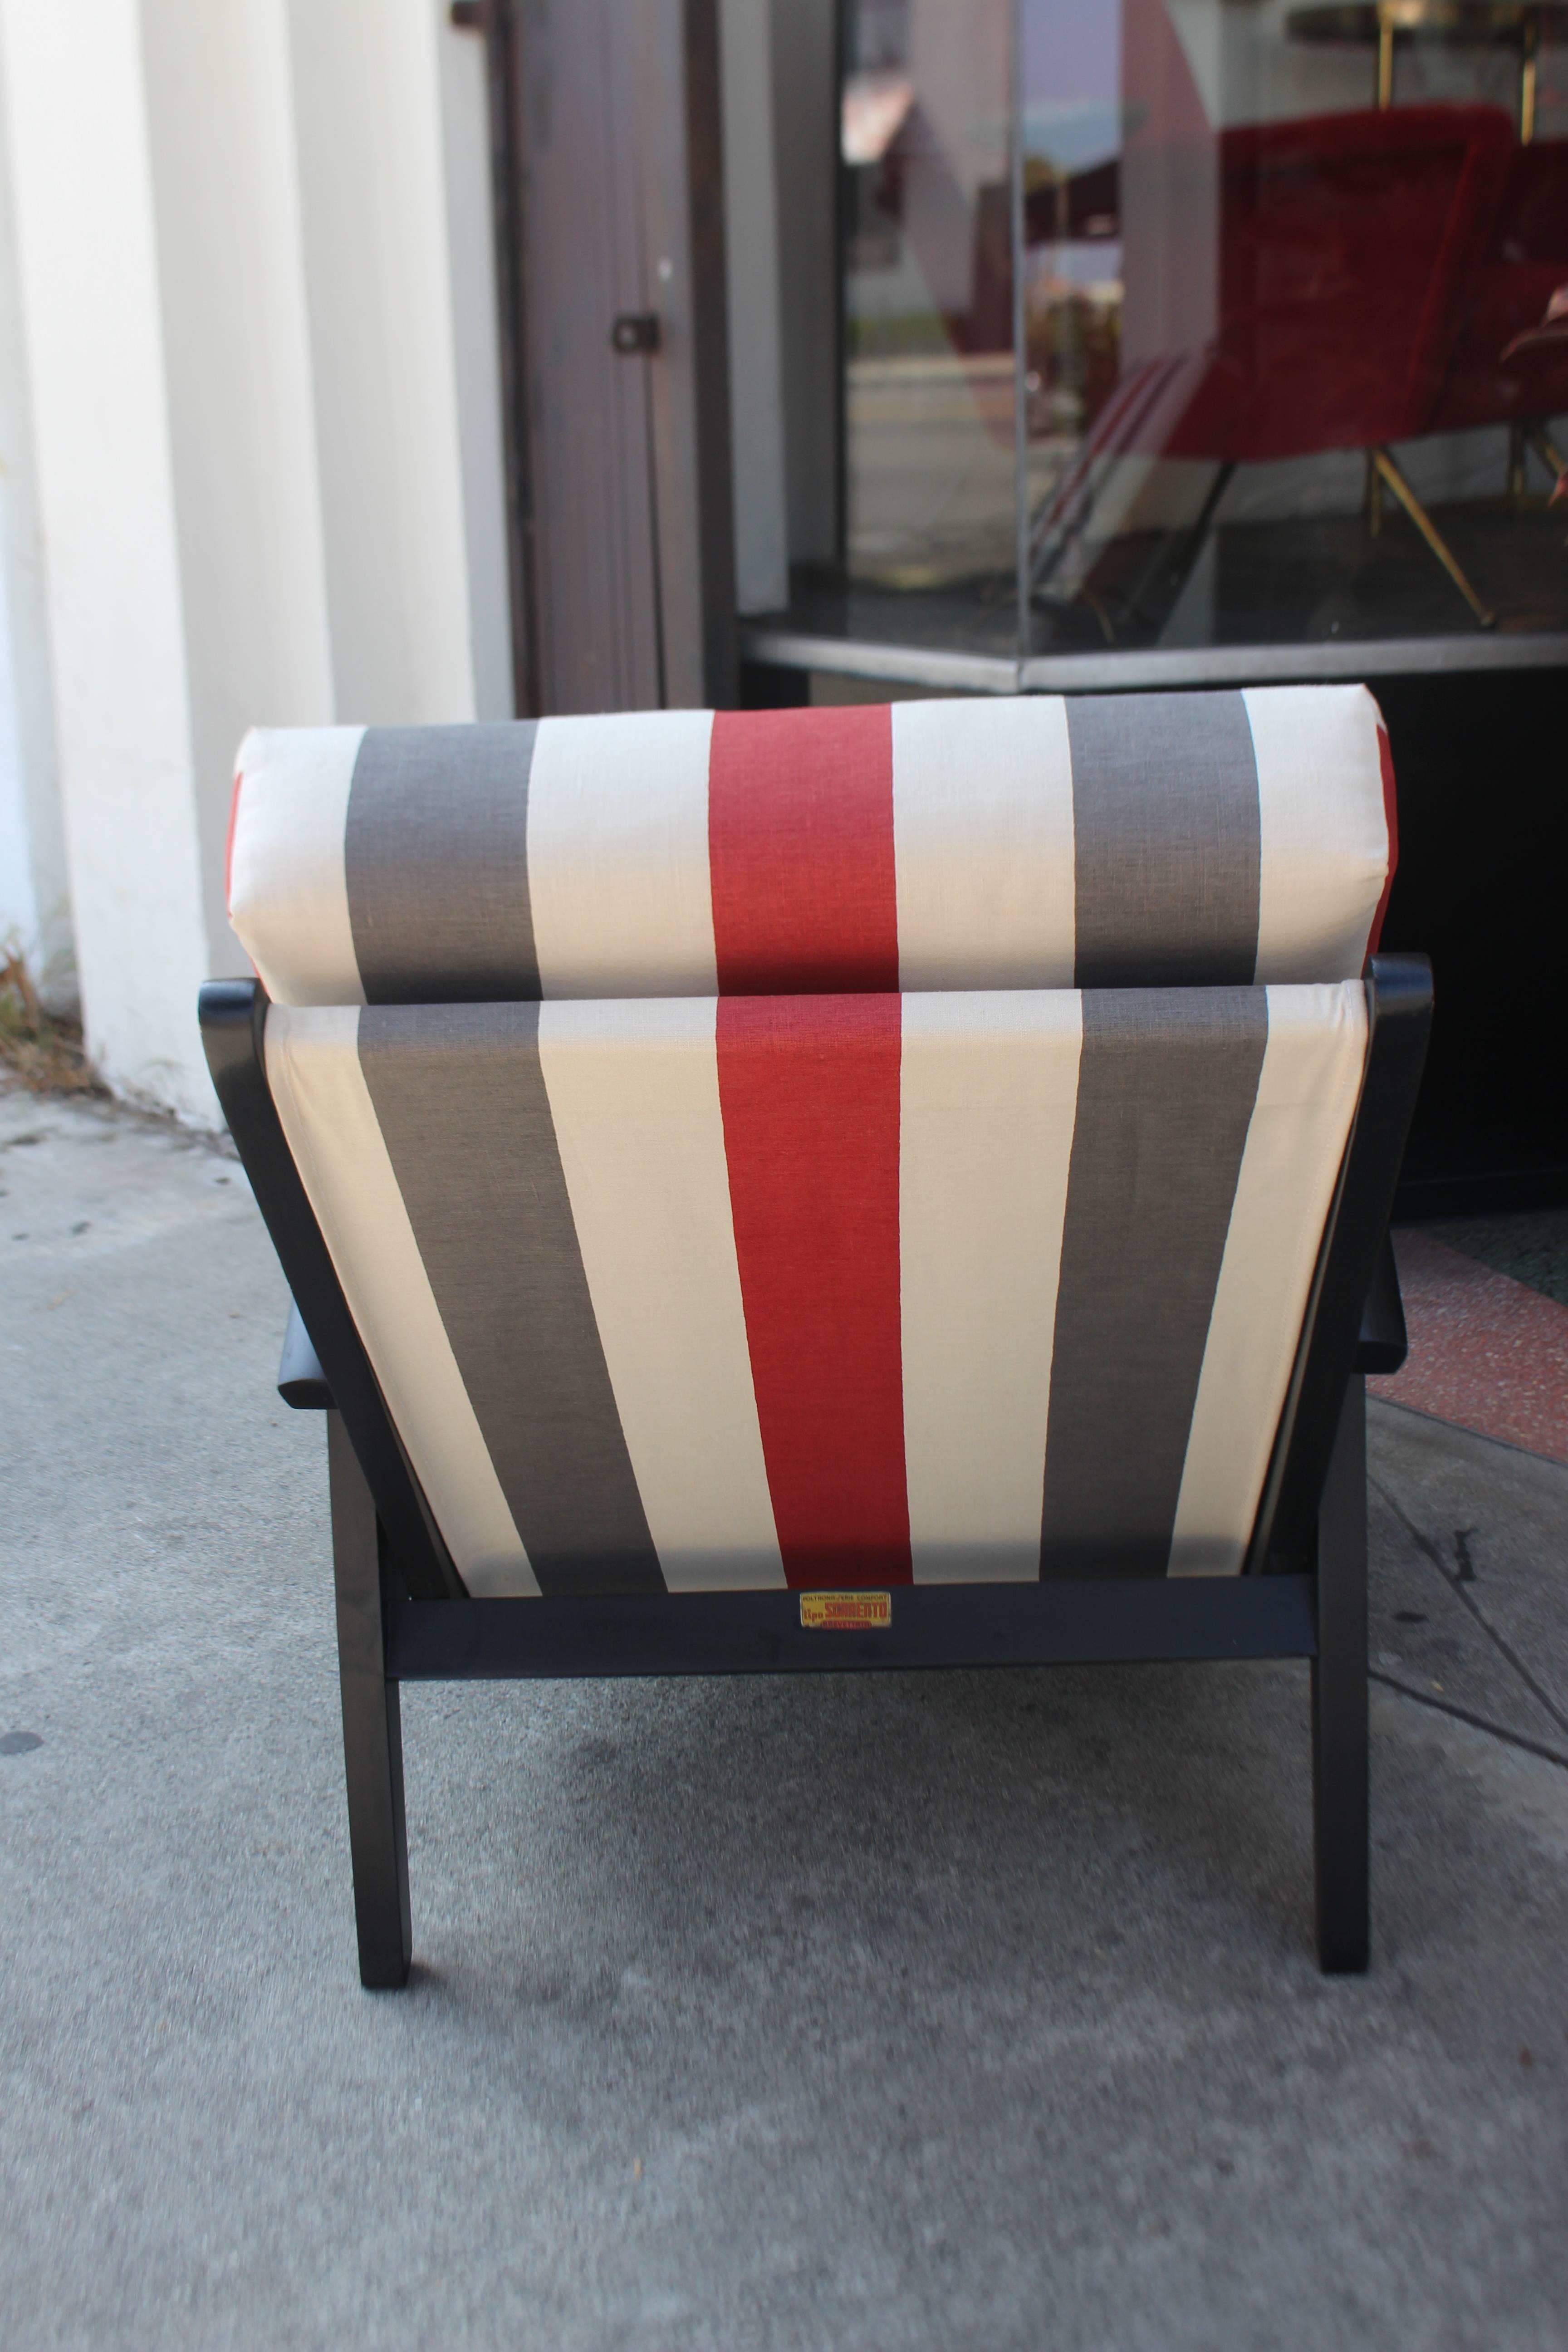 Ein Paar italienische Liegestühle aus den 1960er Jahren für die Terrasse des Hotels Sorrento in Capri. Stühle werden aufgearbeitet und neu gepolstert. 
Das Foto zeigt das Label für Cerutti di Ugo D'Alessio & C.
Kontinentale US-Zustellung nach Hause 